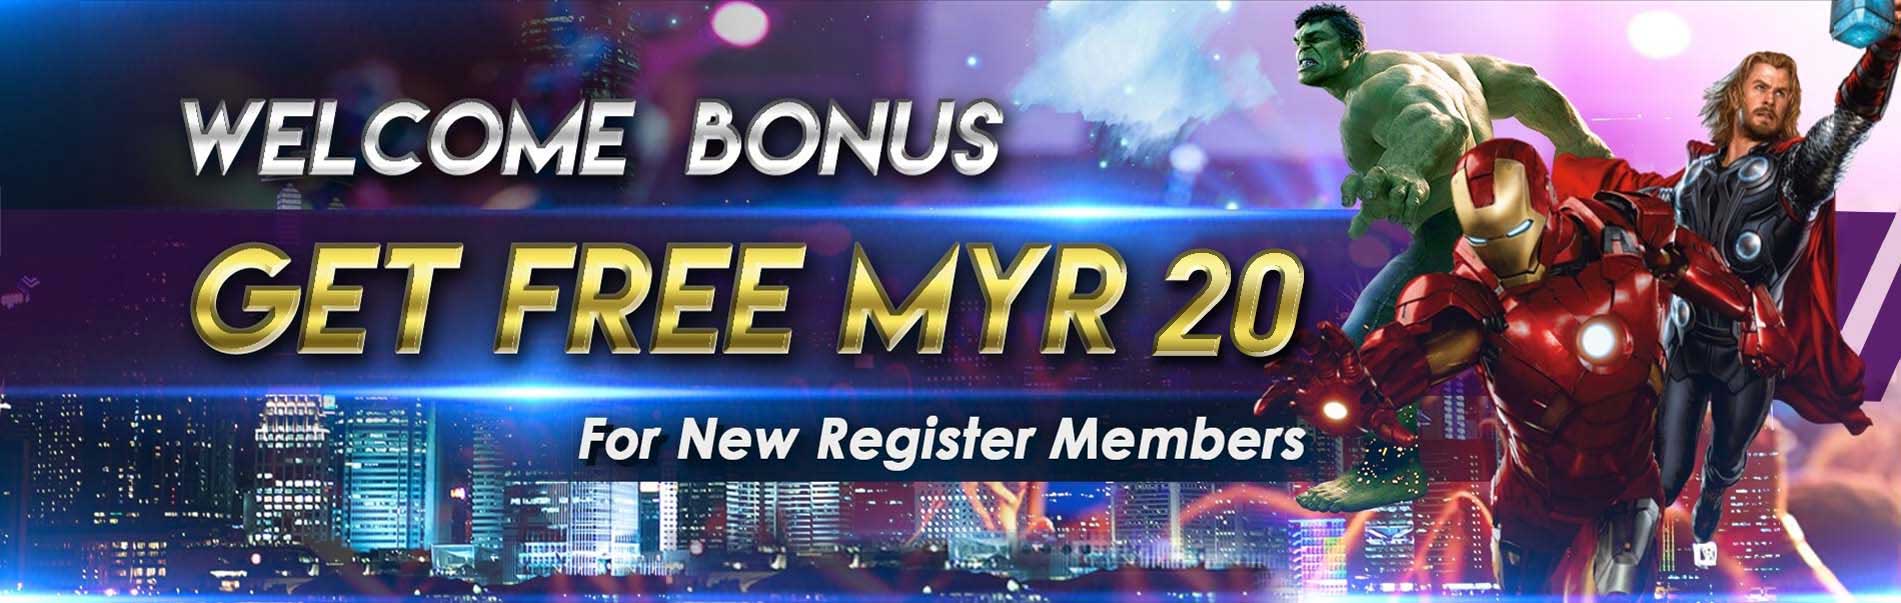 Free Deposit Bonus Casino Malaysia Abcwh